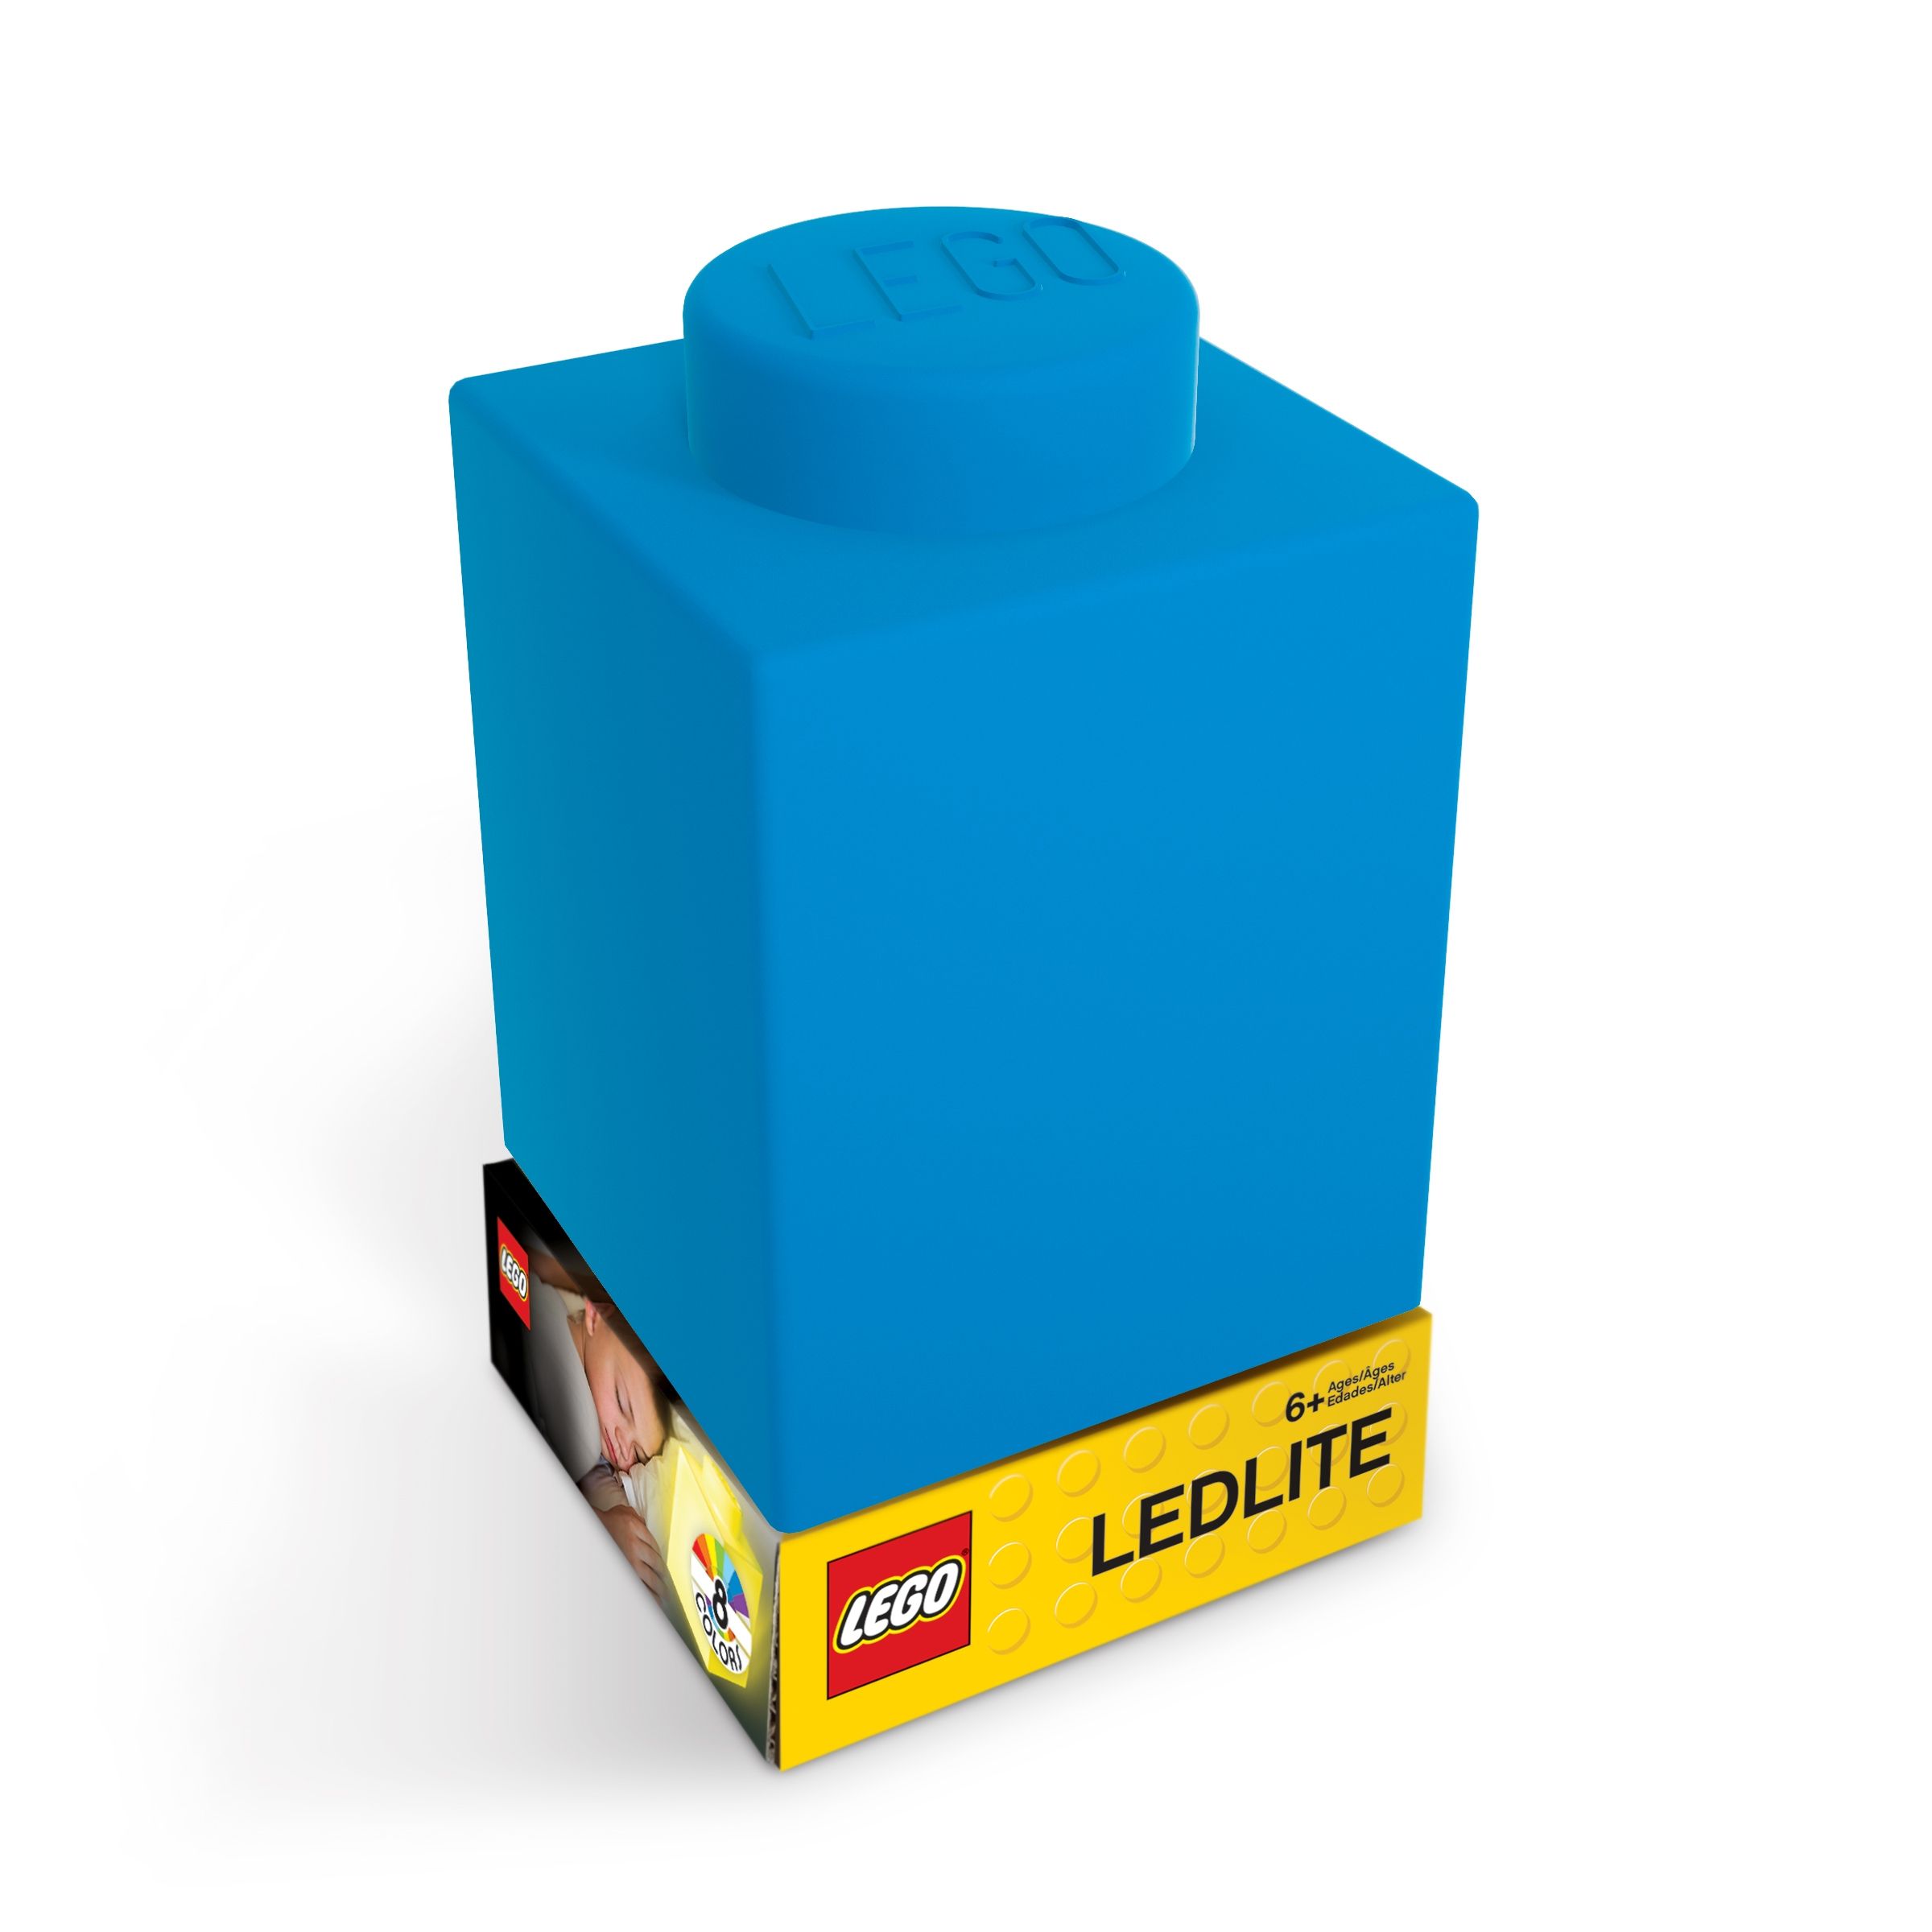 LEGO Gear 5007230 1x1 Stein-Nachtlicht – Blau LEGO_5007230_alt1.jpg